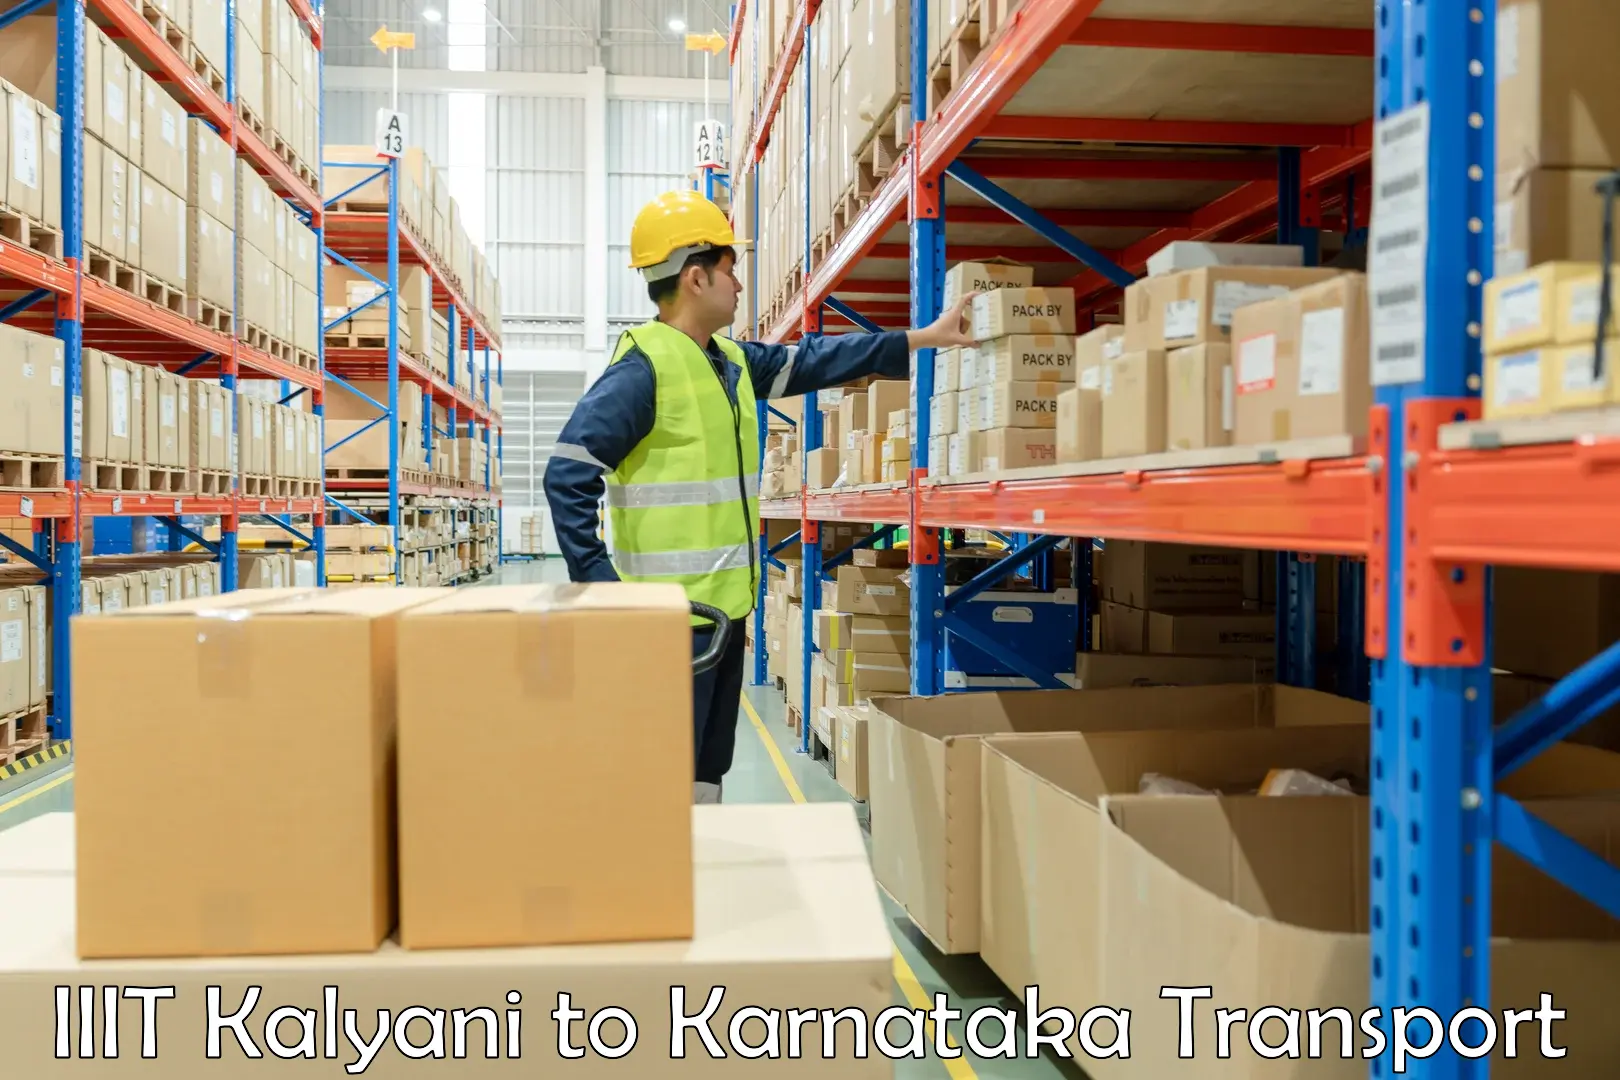 Two wheeler transport services IIIT Kalyani to Kanjarakatte